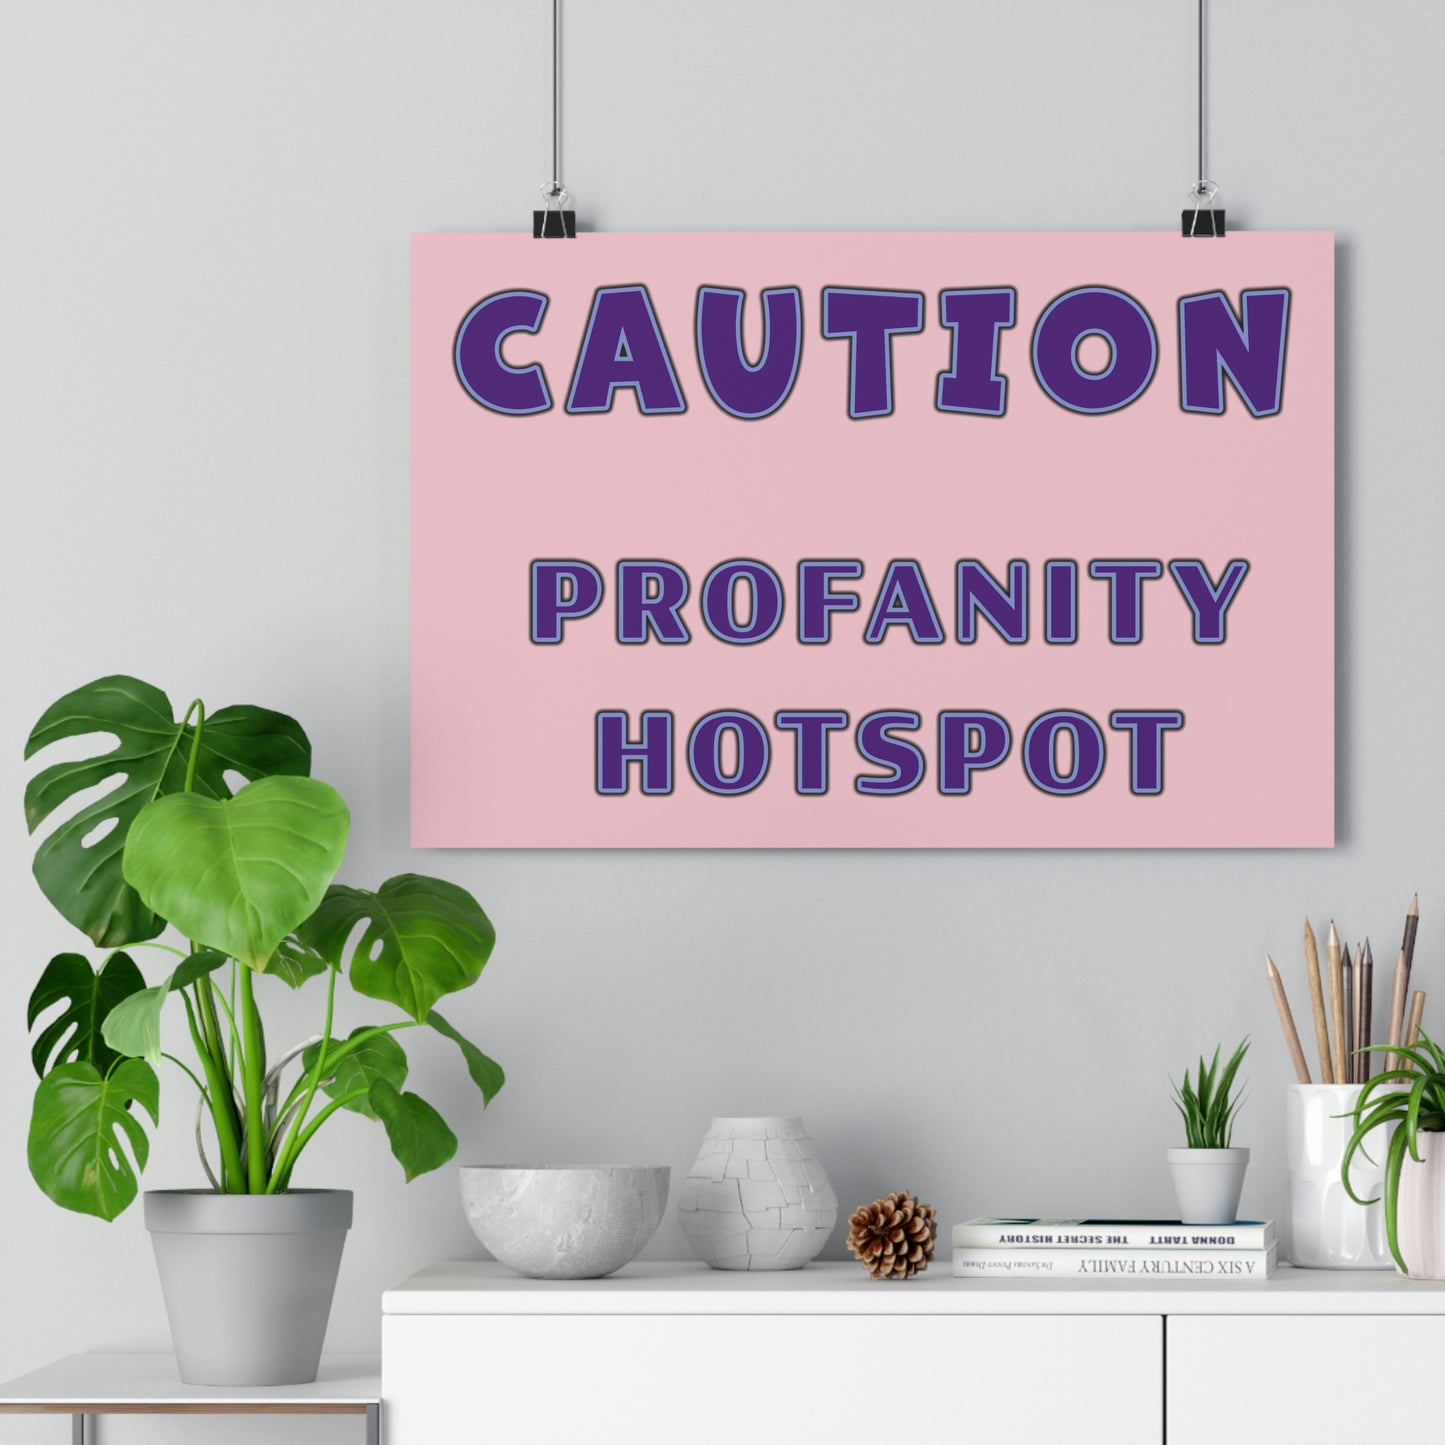 Profanity hotspot